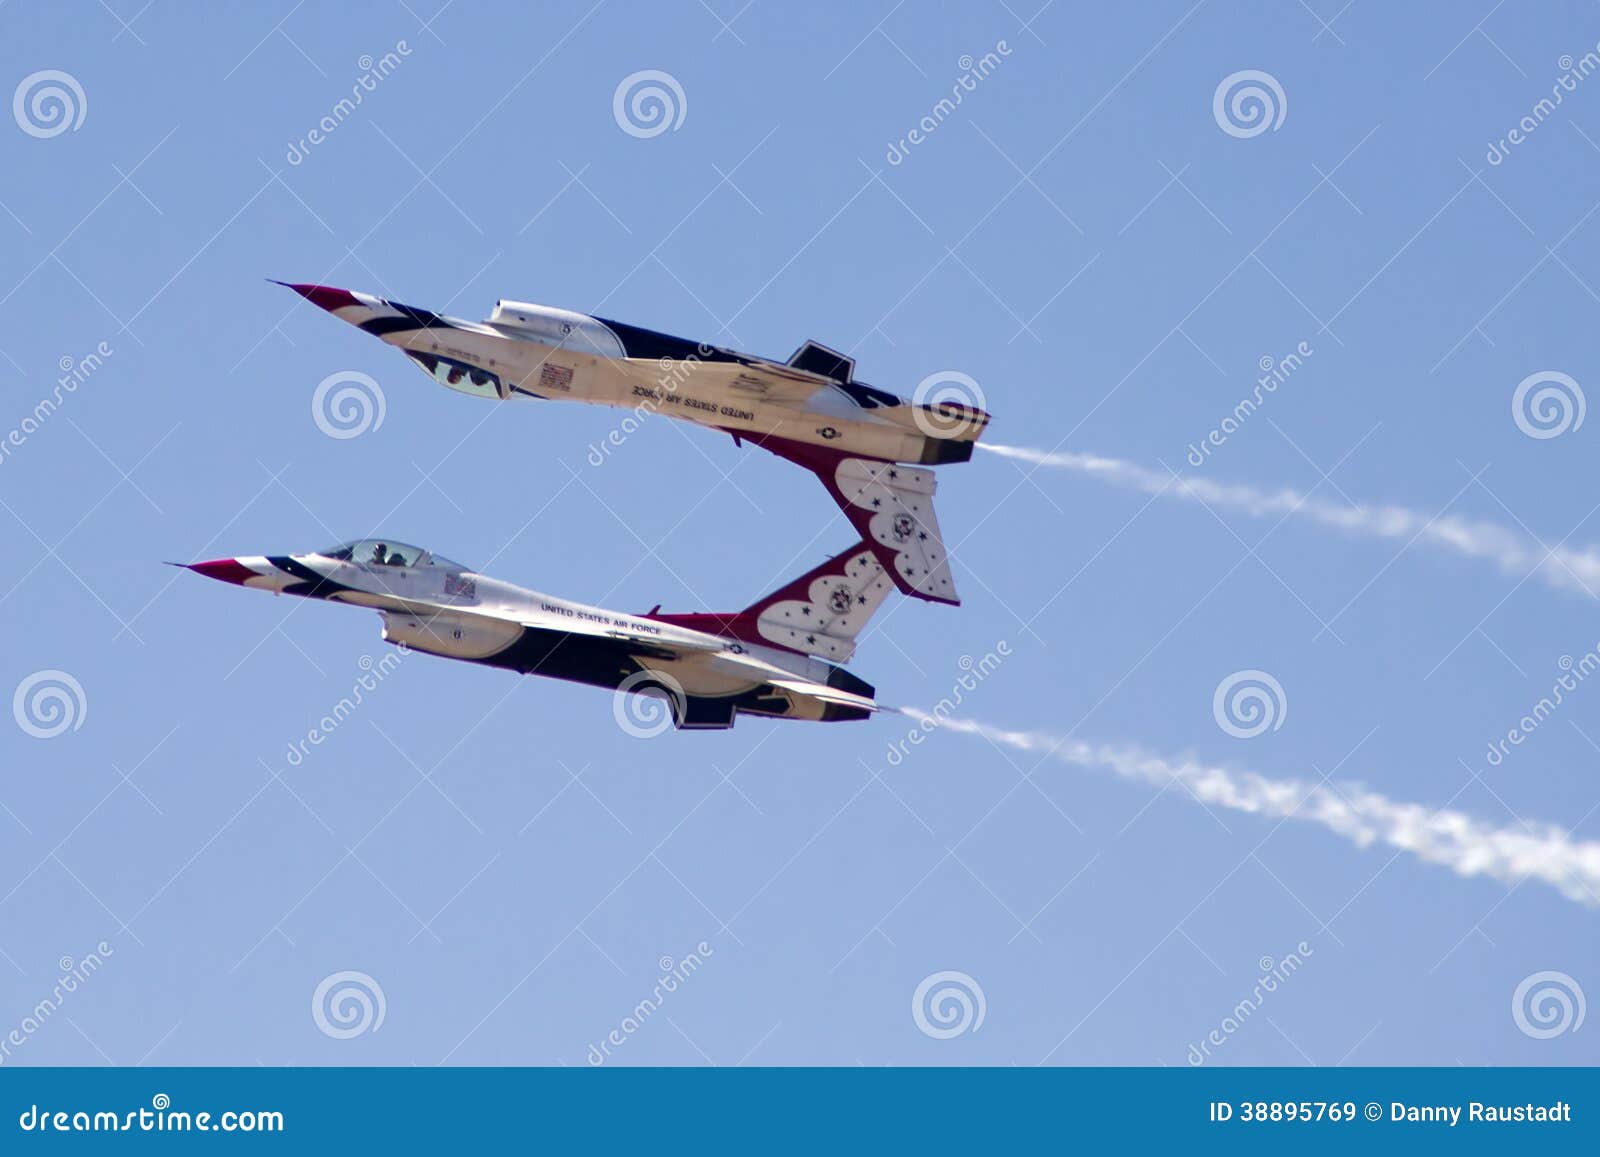 Thunderbirds - U.S. Air Force